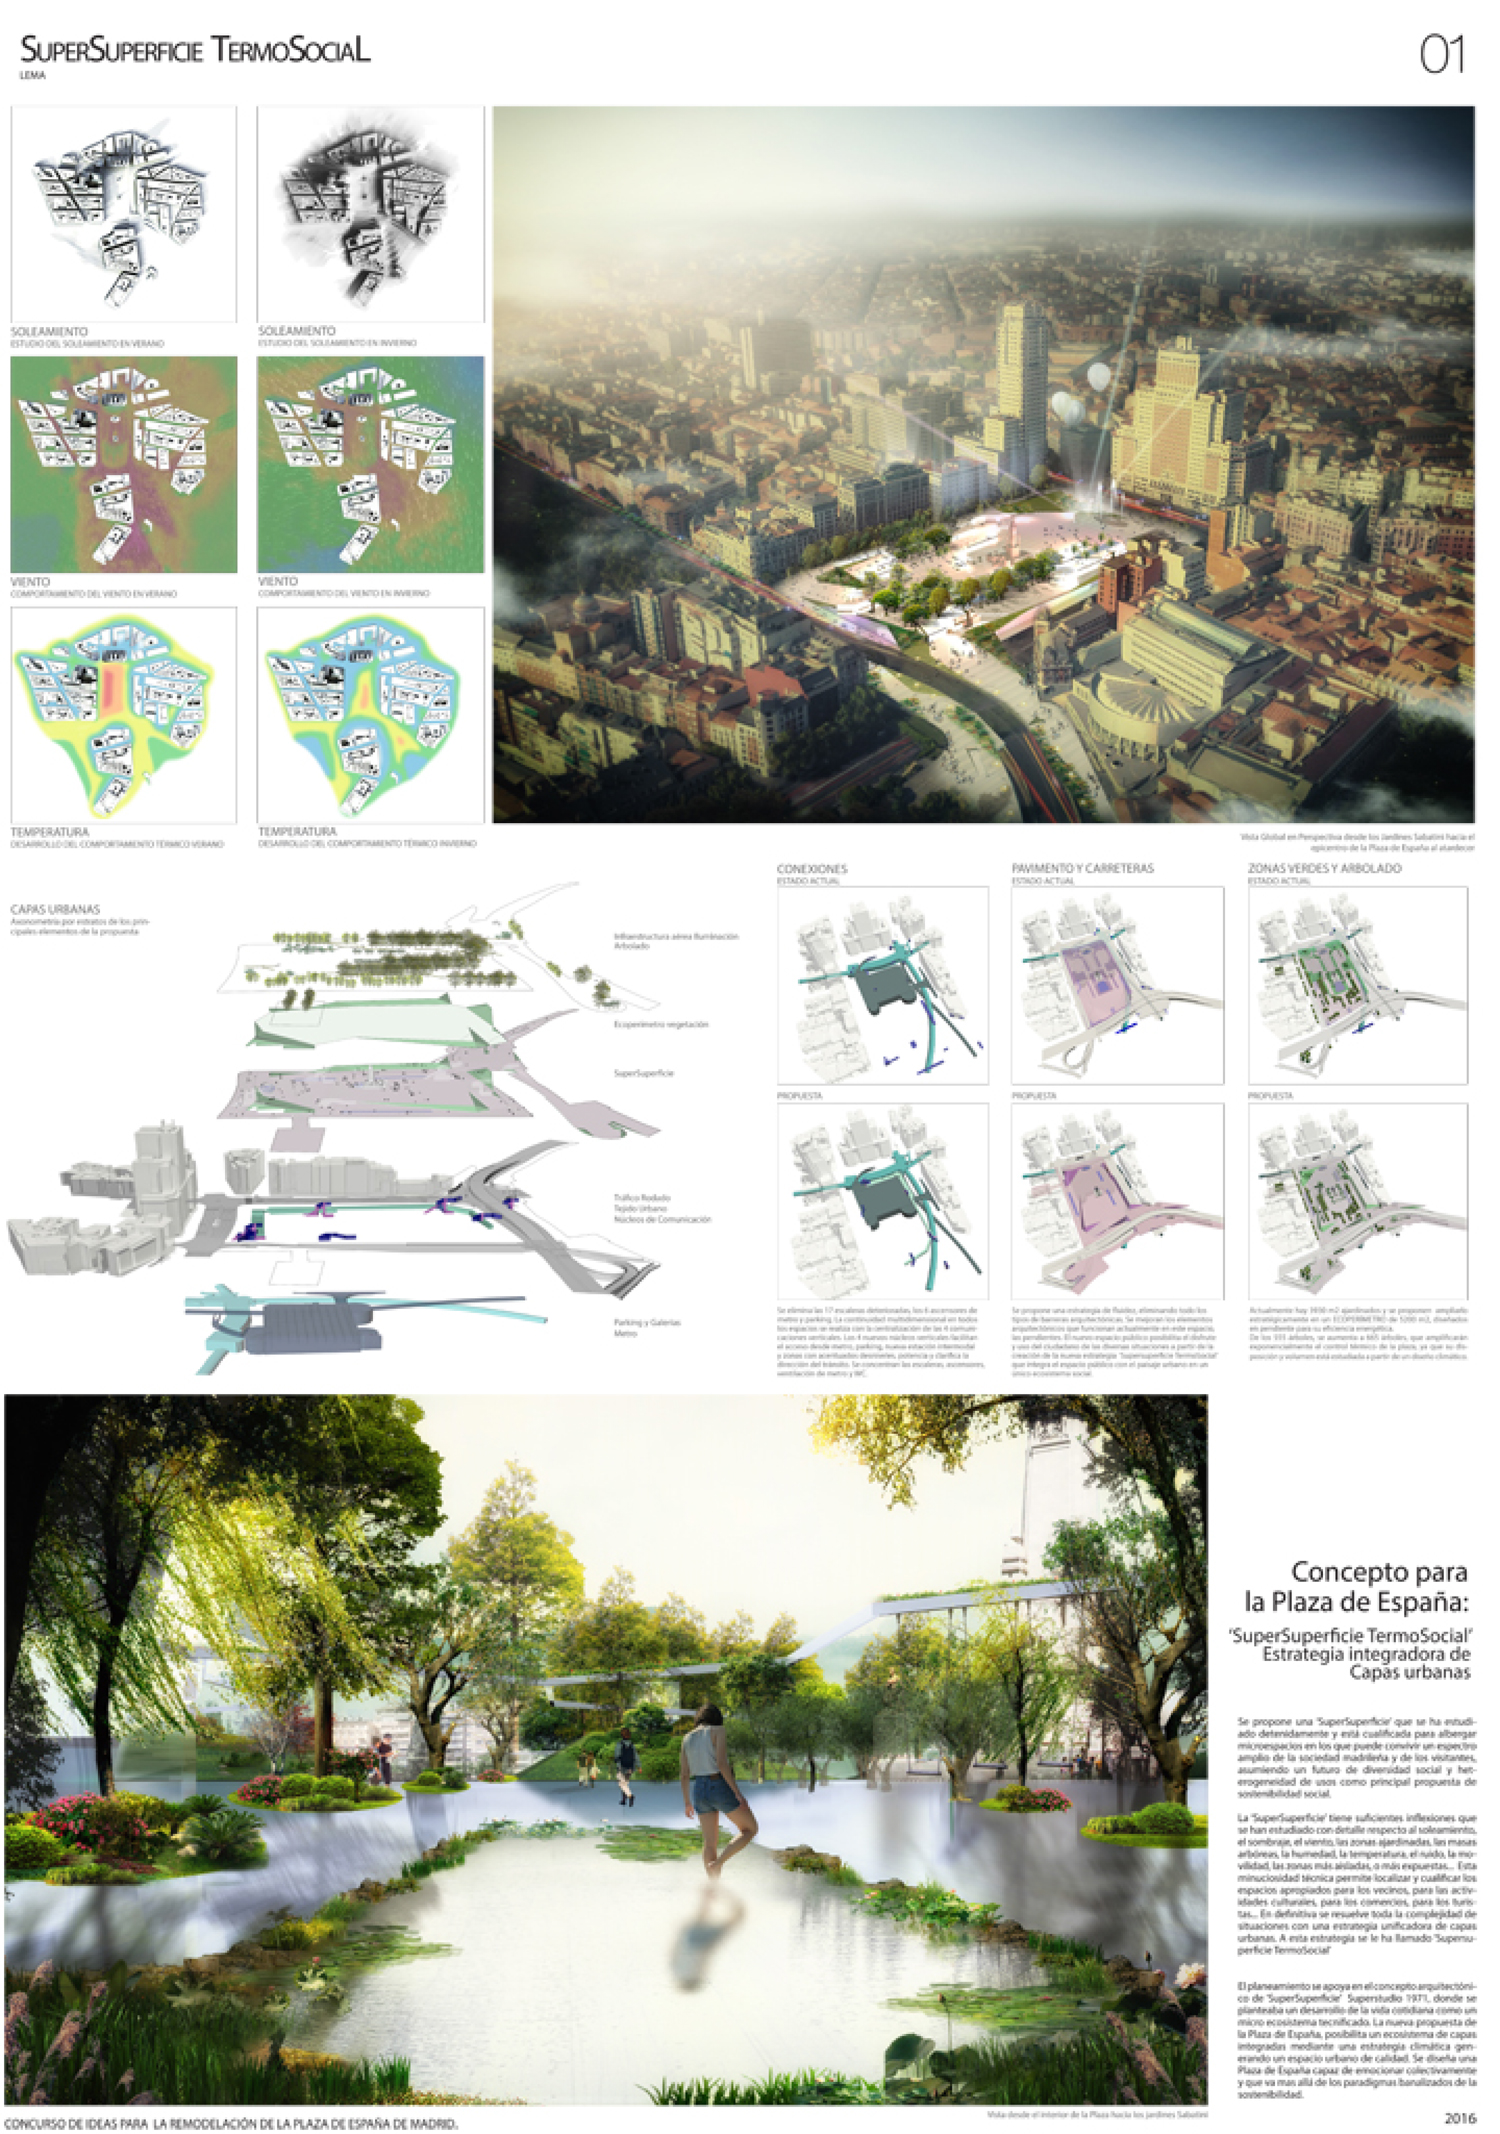 Proyecto 60 para la Remodelación de Plaza España: SuperSuperficie TermosSocial